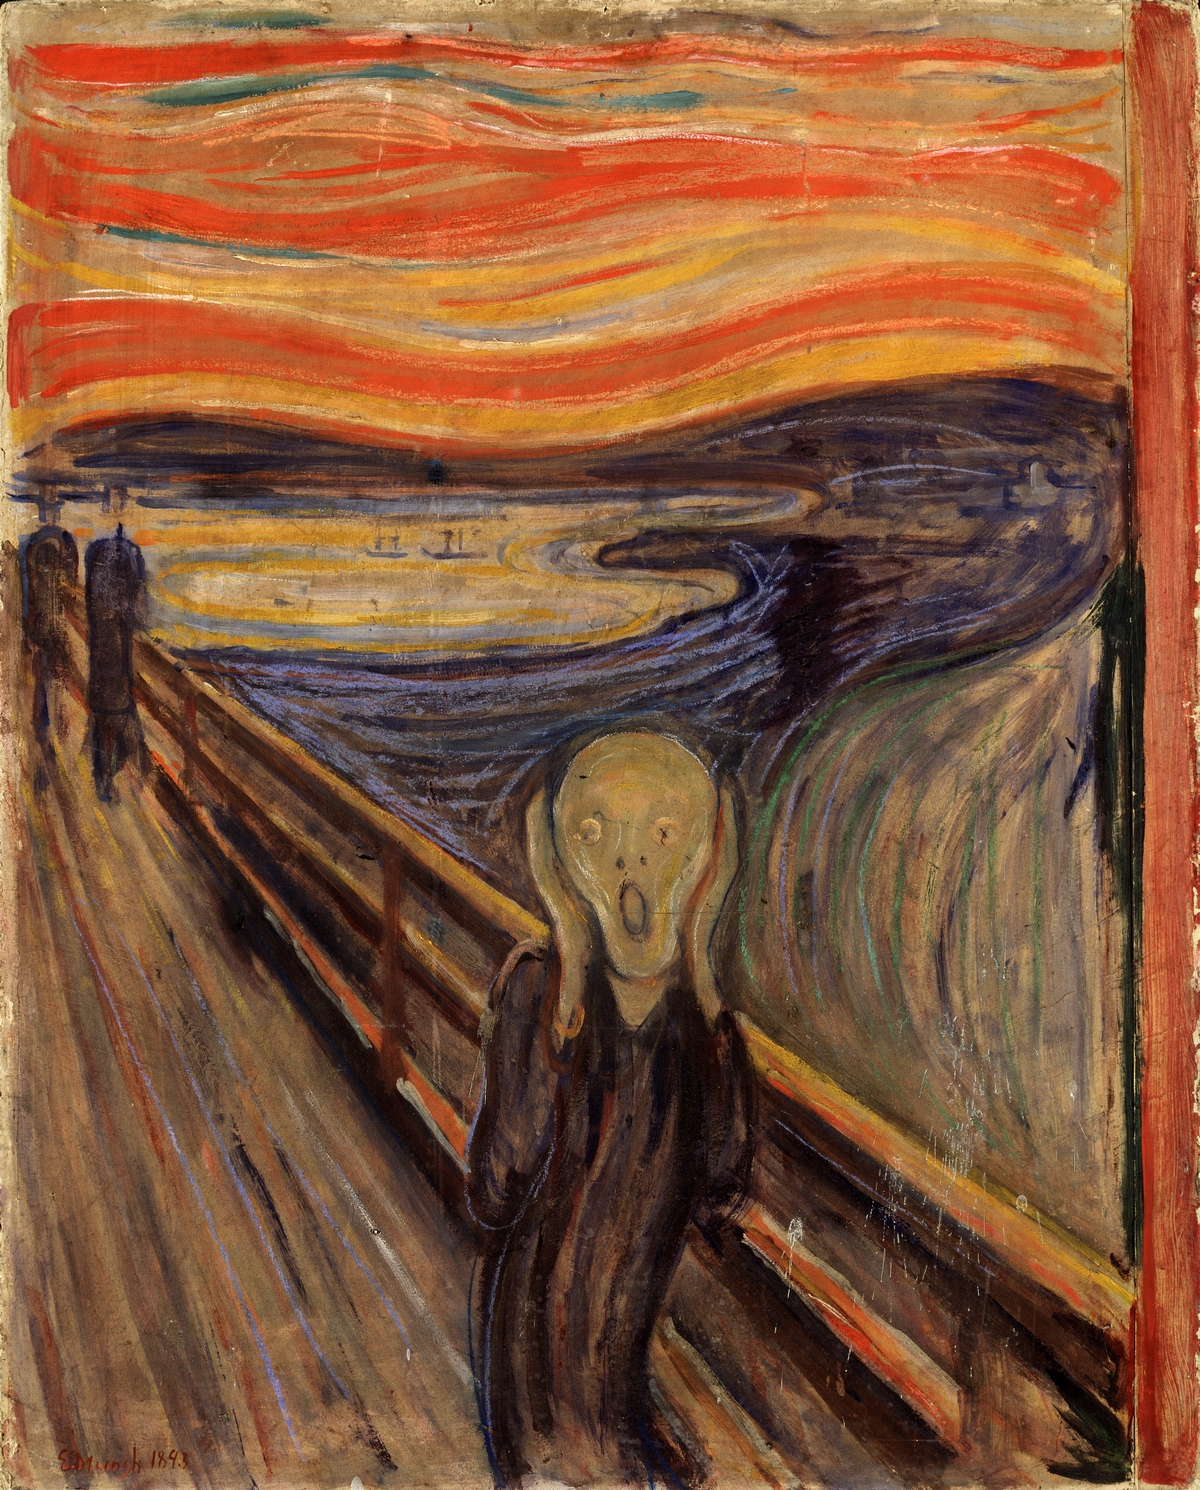 El grito-Edvard Munch 